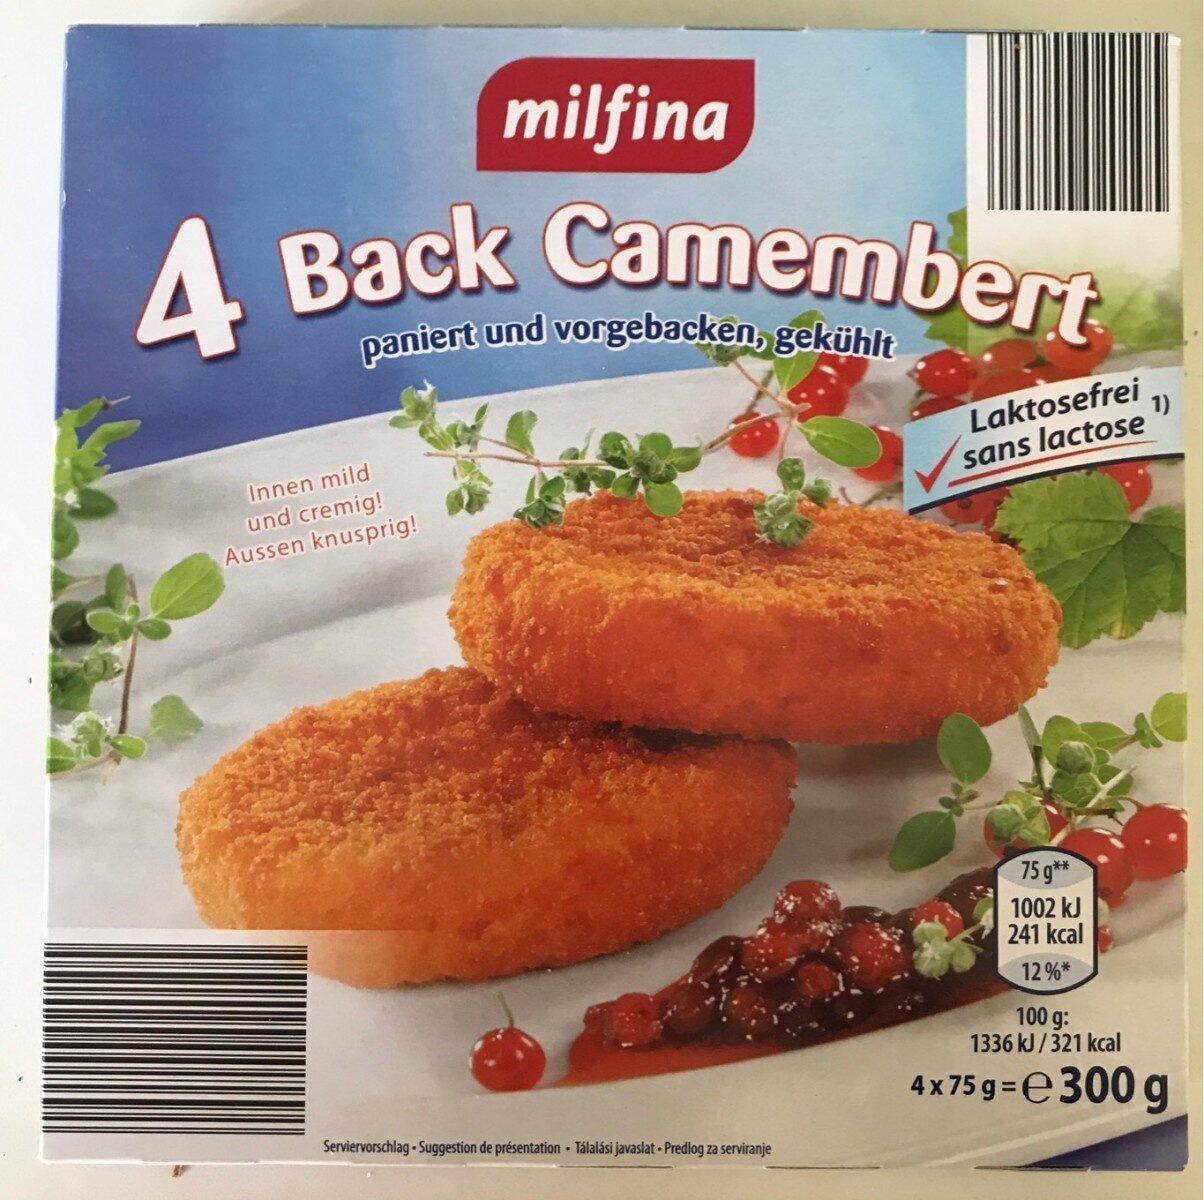 Back camembert pané - Prodotto - de